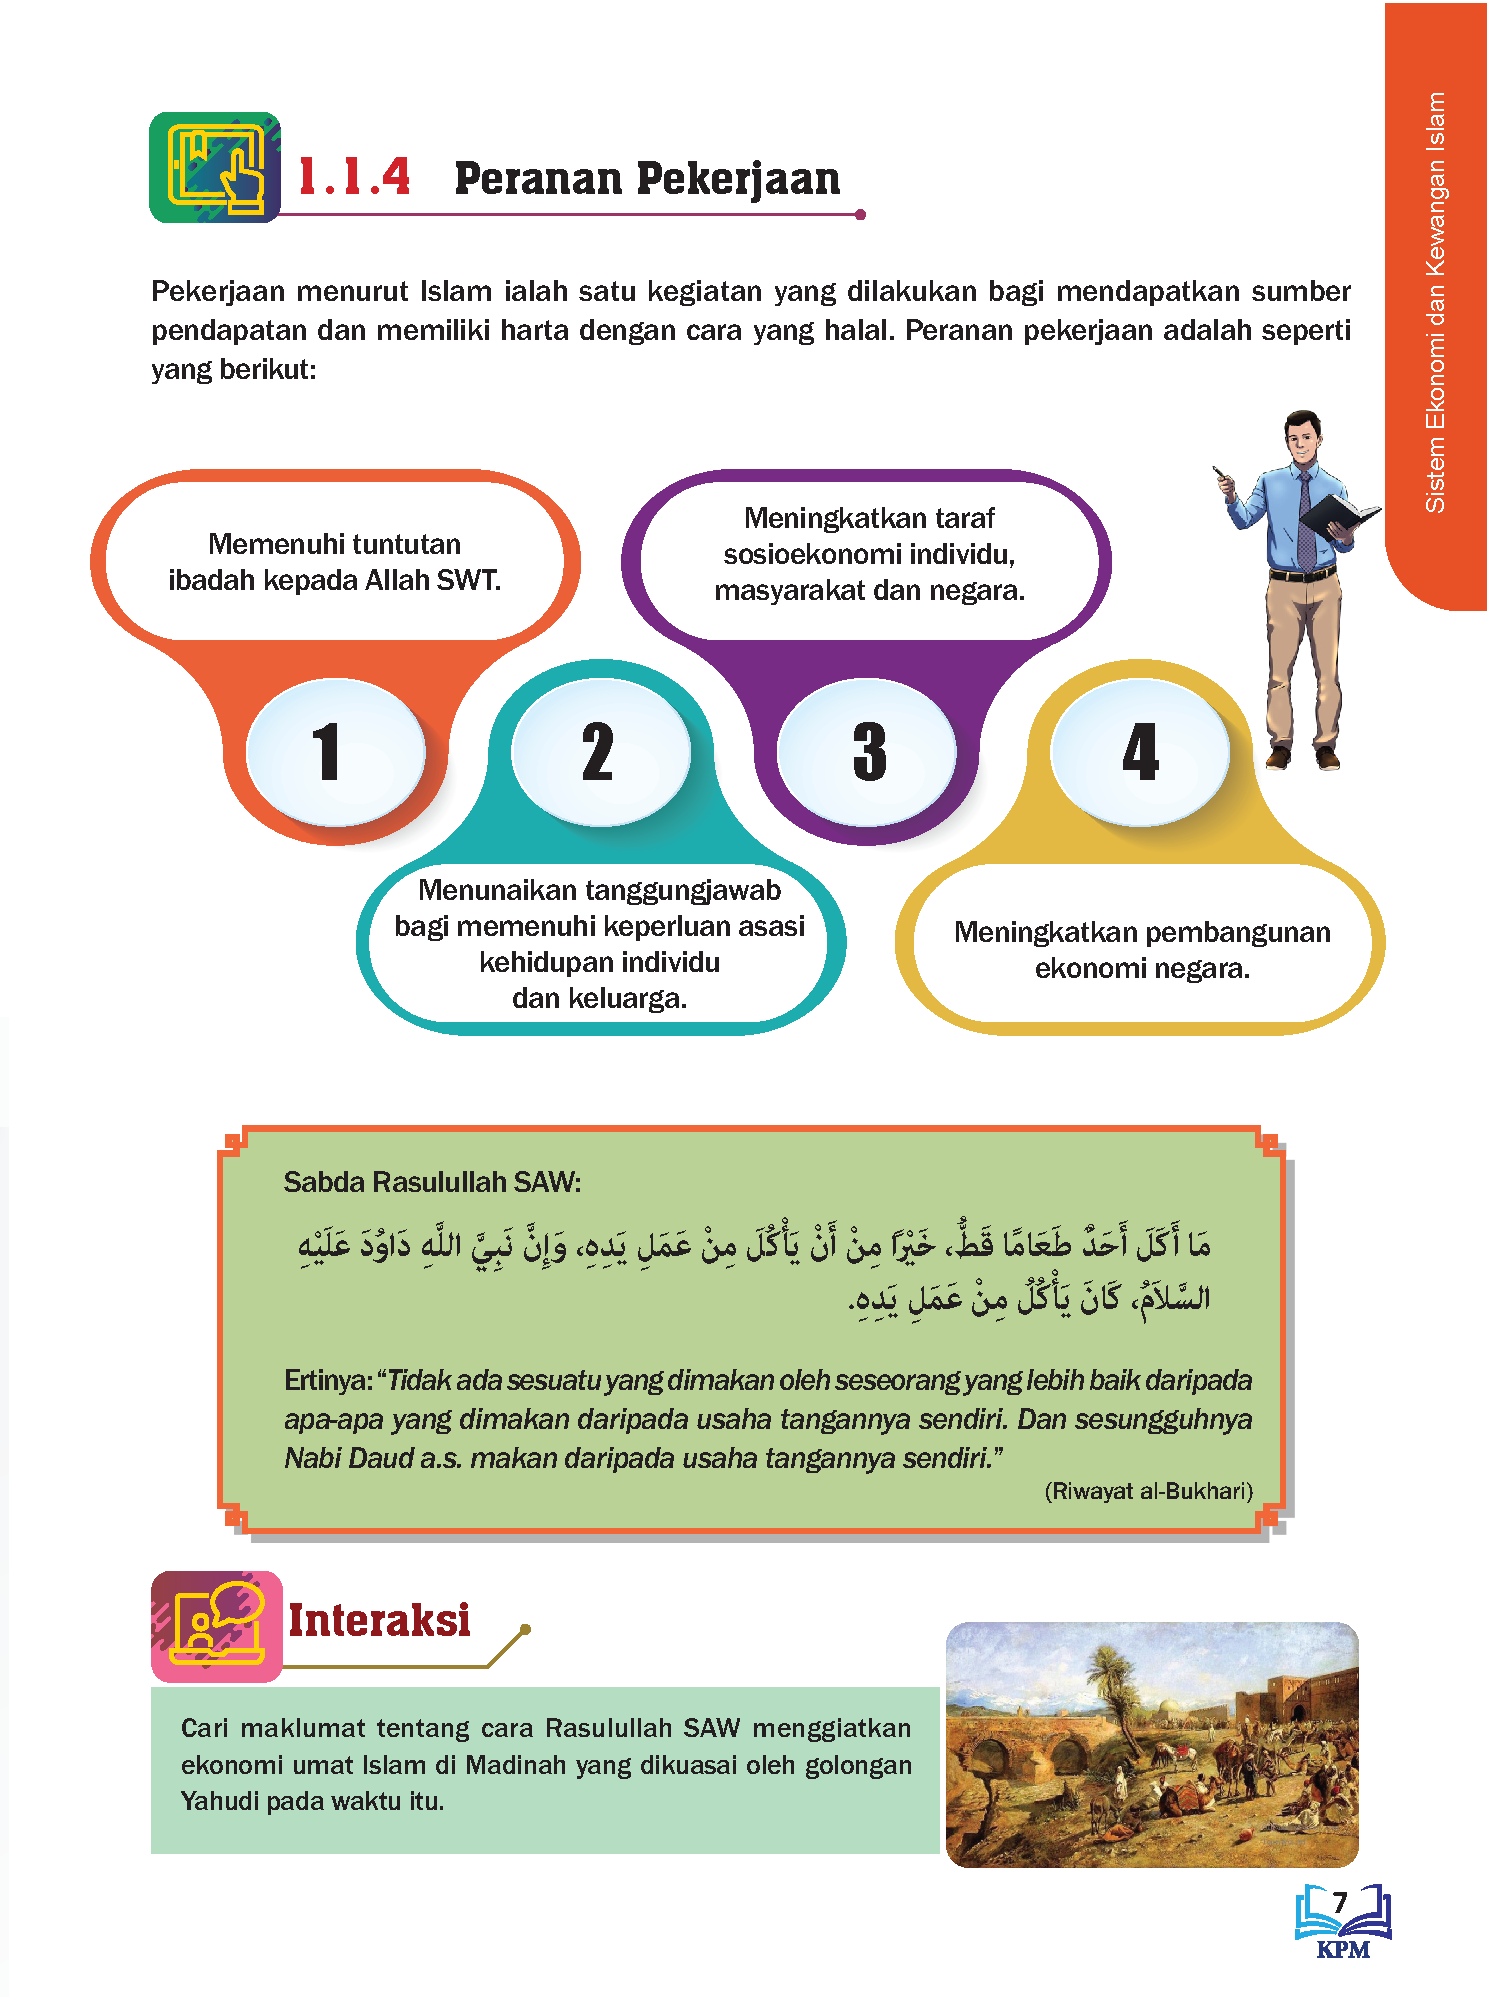 Tasawwur Islam Tingkatan 5- (FT455001)